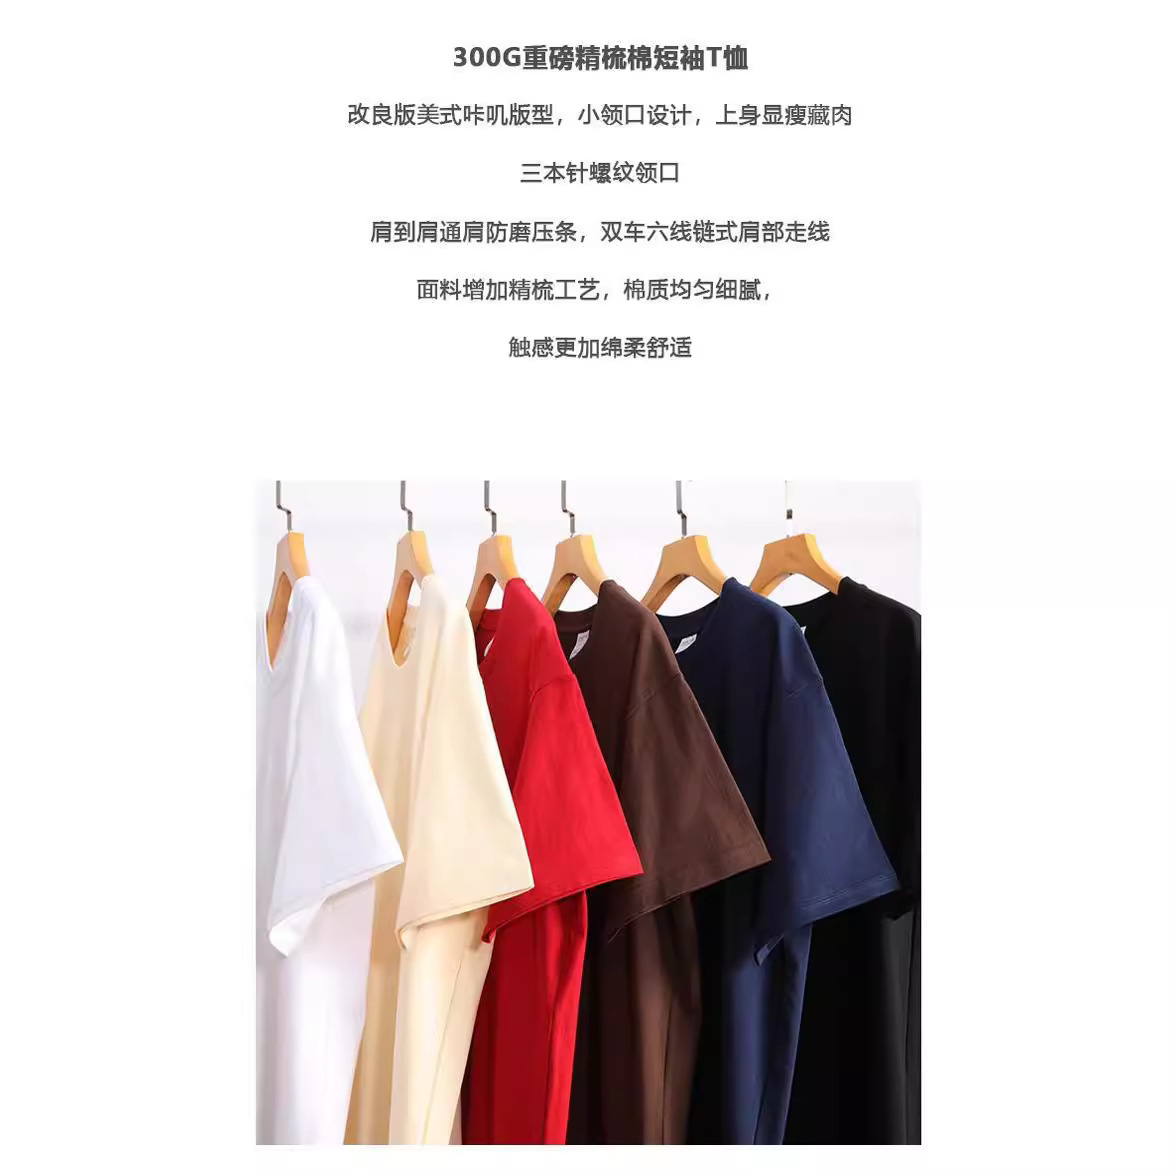 300g高端纯棉T恤 印字刻图 源头工厂定制工服T恤PO衫广告衫文化衫